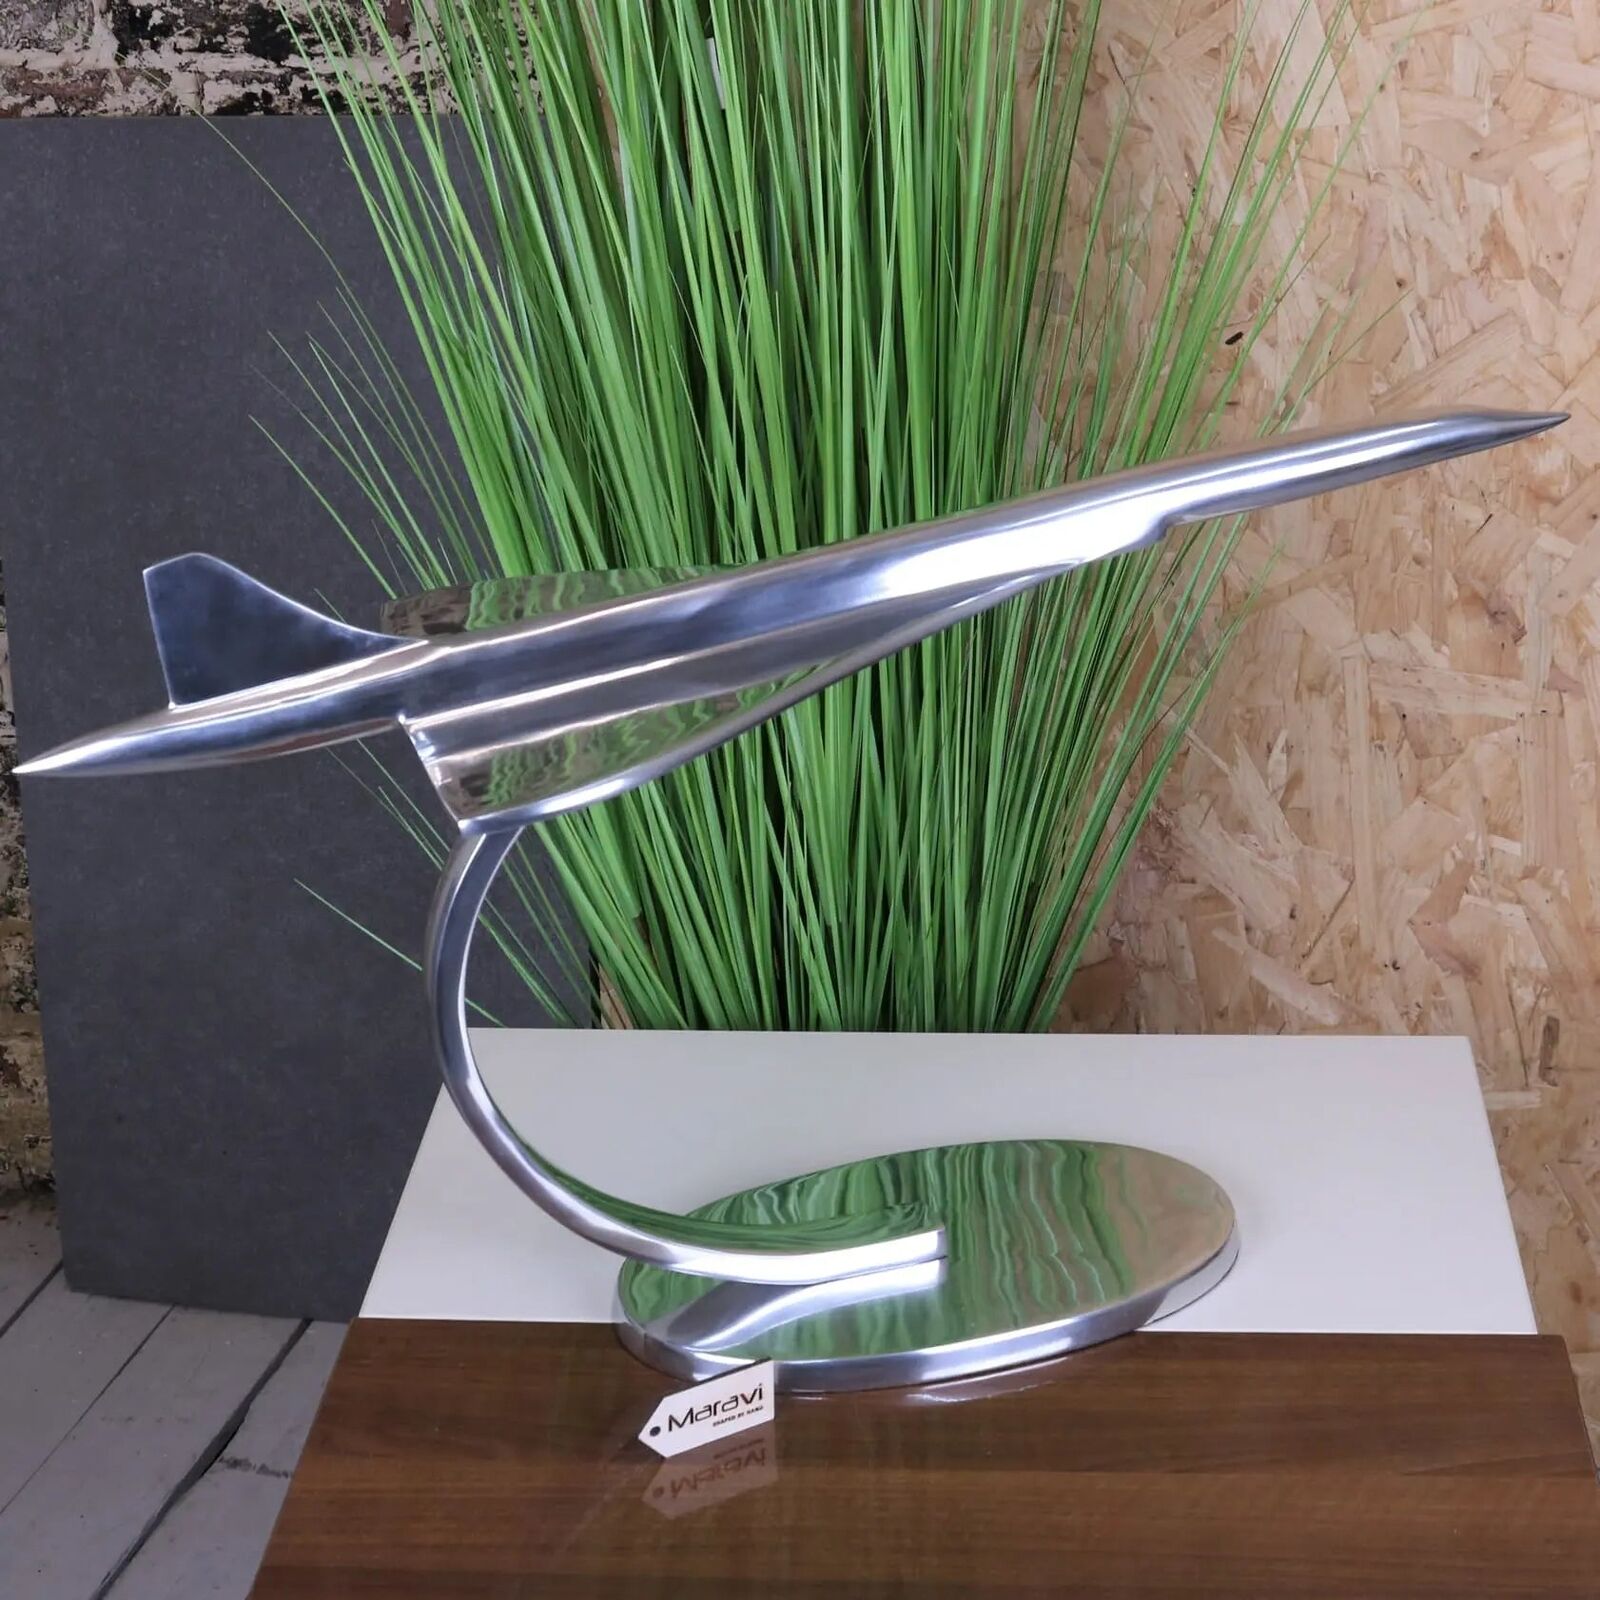 Saran Concorde Model 71cm Airline Desk Ornament Gift